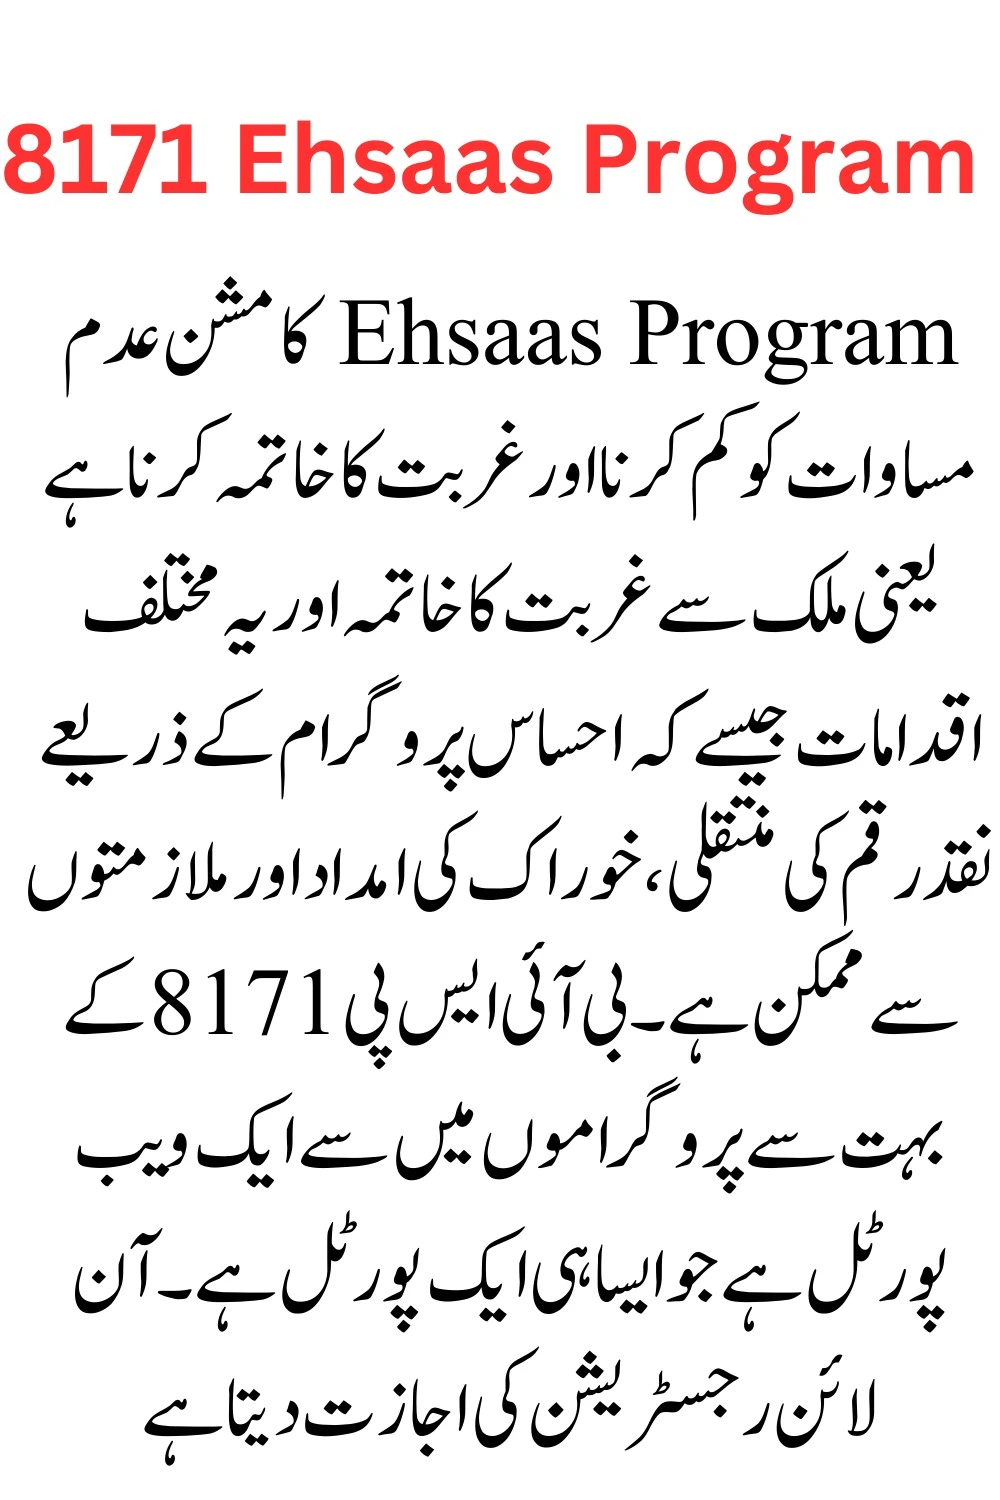 8171 Ehsaas Program 25000 BISP New Update